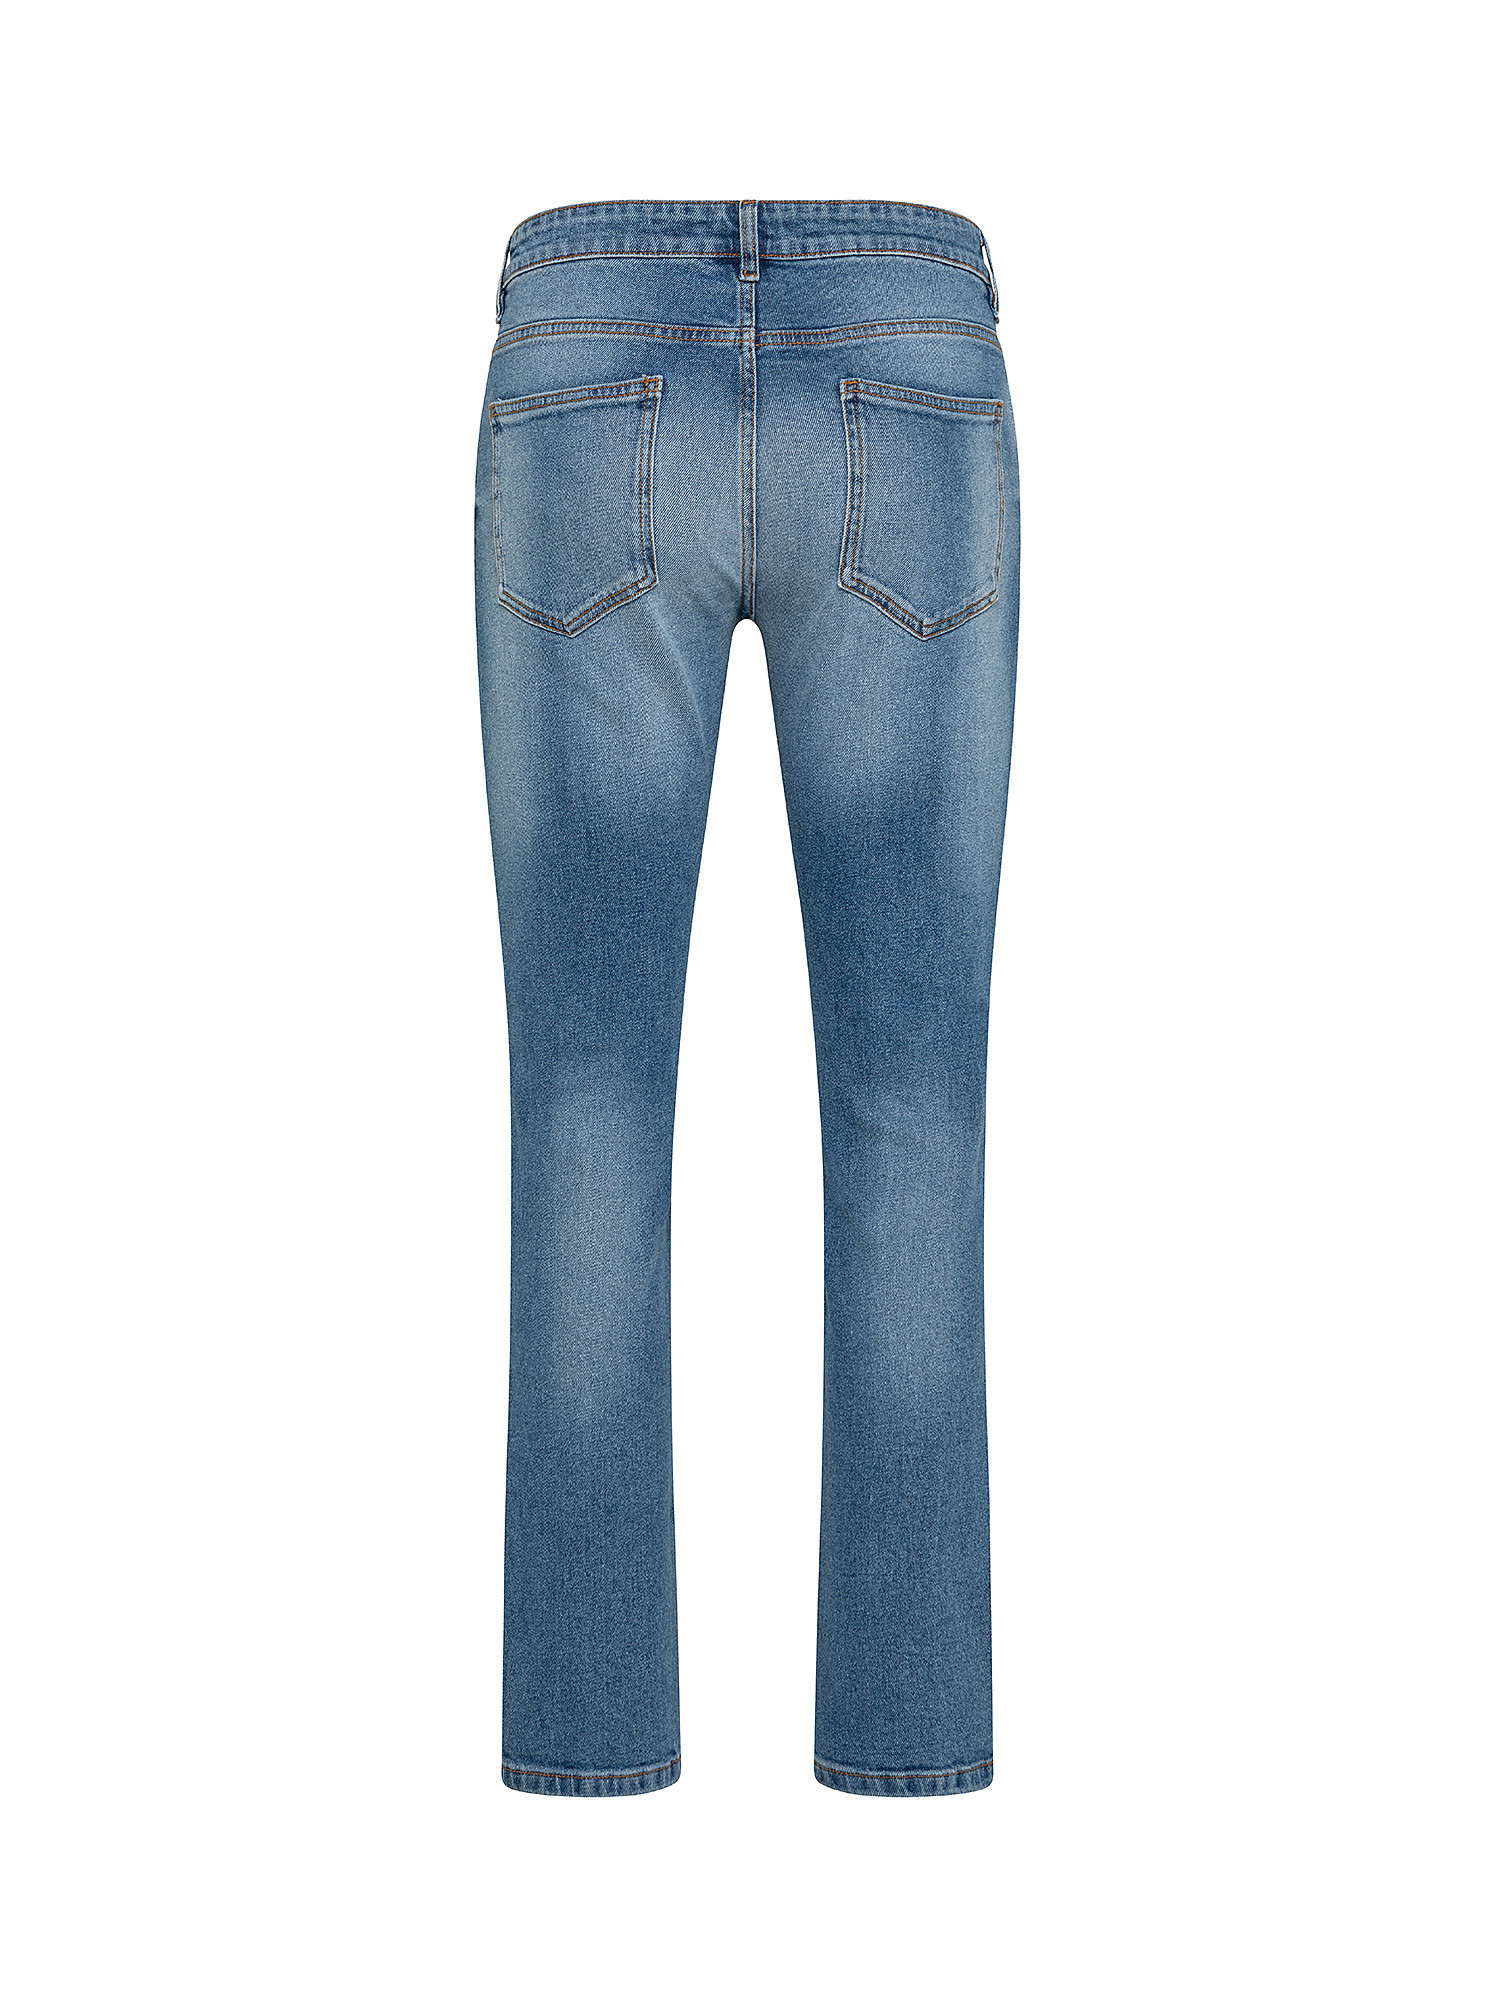 Five pocket jeans, Light Blue, large image number 1